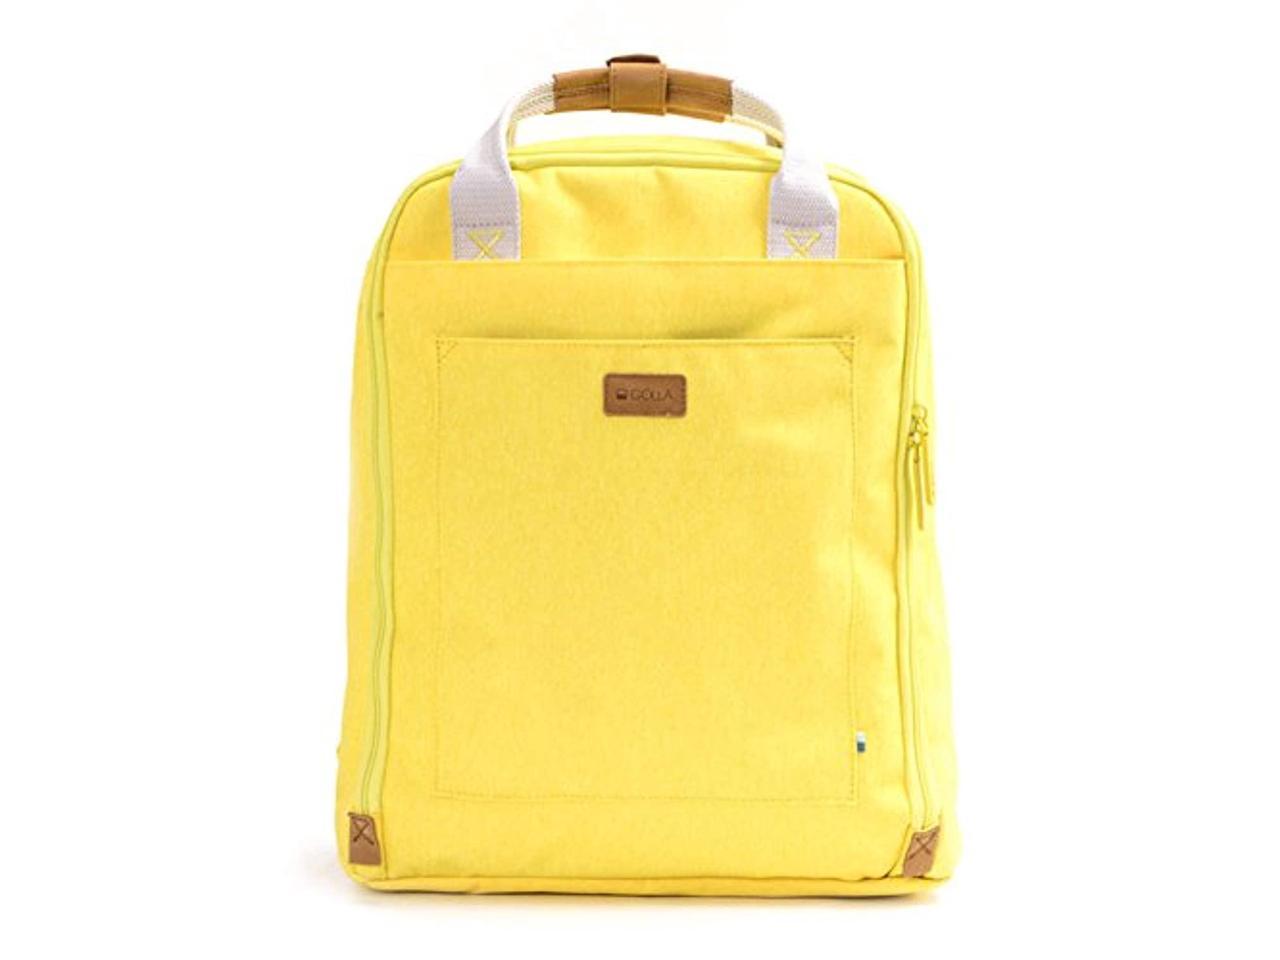 Pitbull Dog Classic Fashion 15 Inch Laptop Bag Large Capacity Unisex Travel Backpack